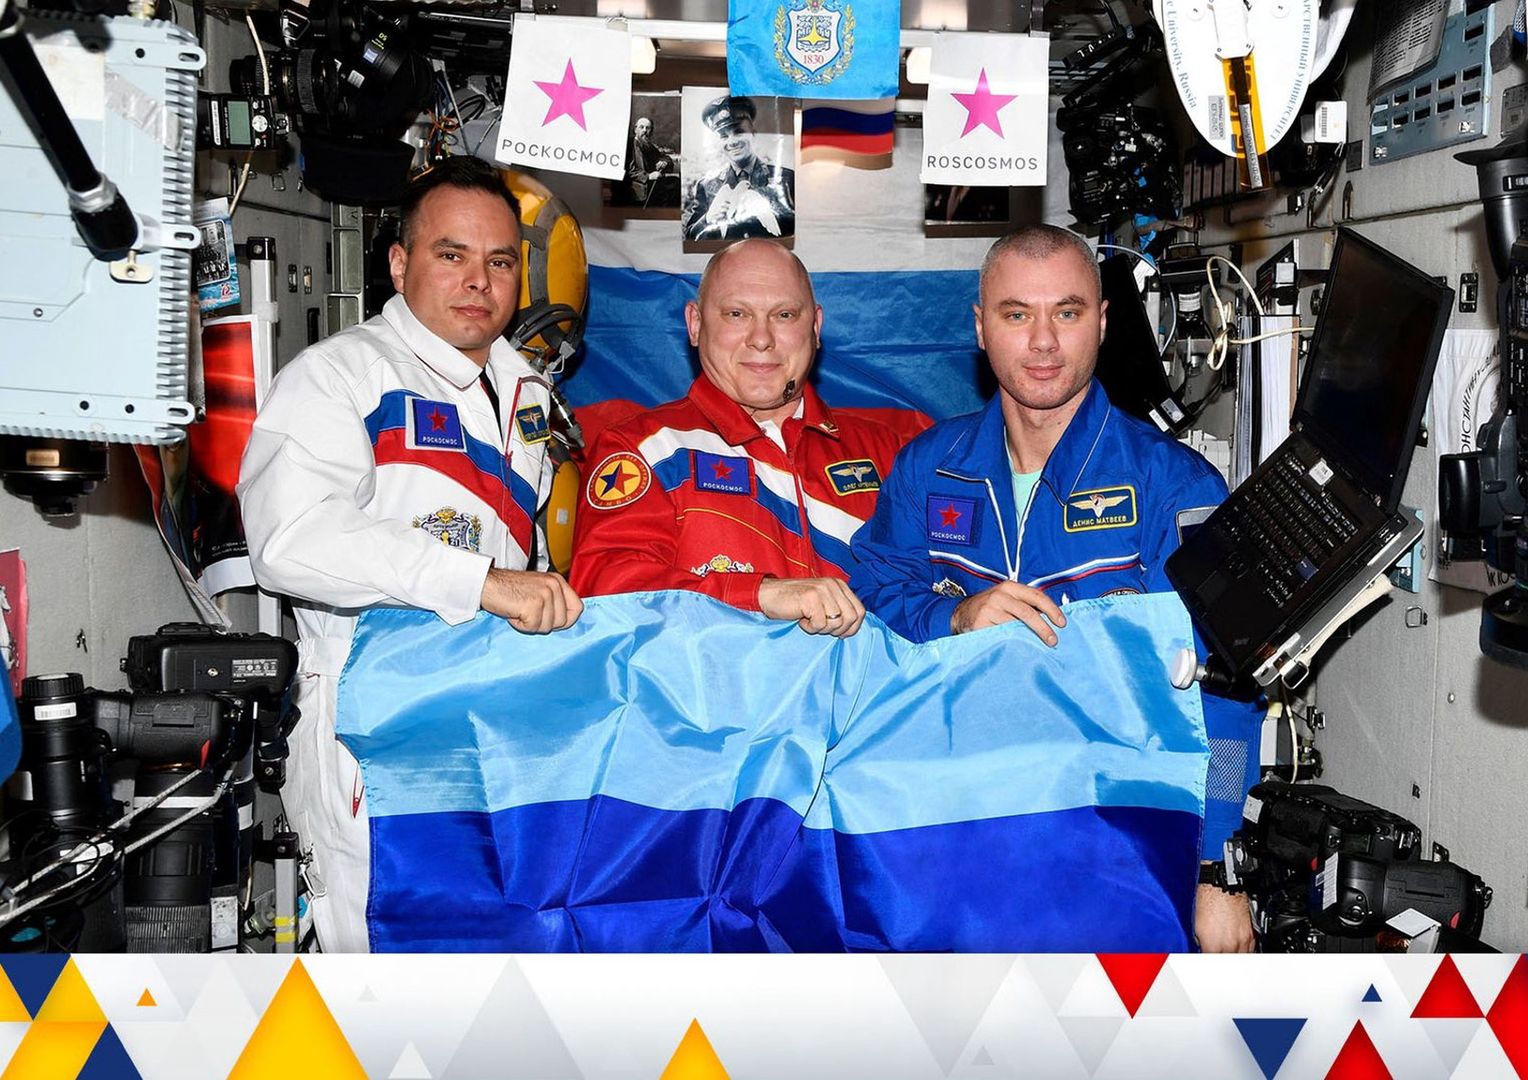 Rosjanie świętują nawet w kosmosie. "Długo wyczekiwany dzień"